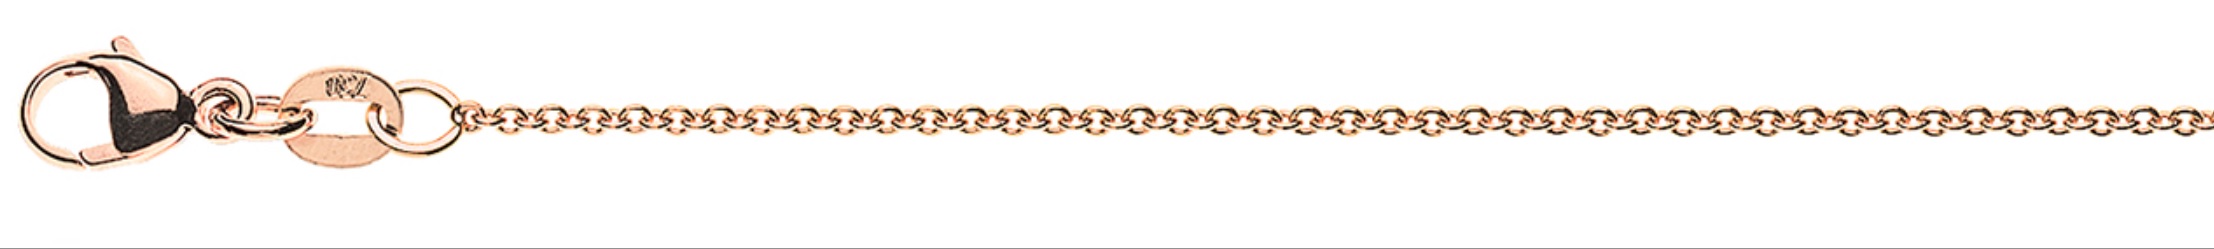 AURONOS Prestige Bracelet Round Anchor 18K Rose Gold 19cm 1.3mm